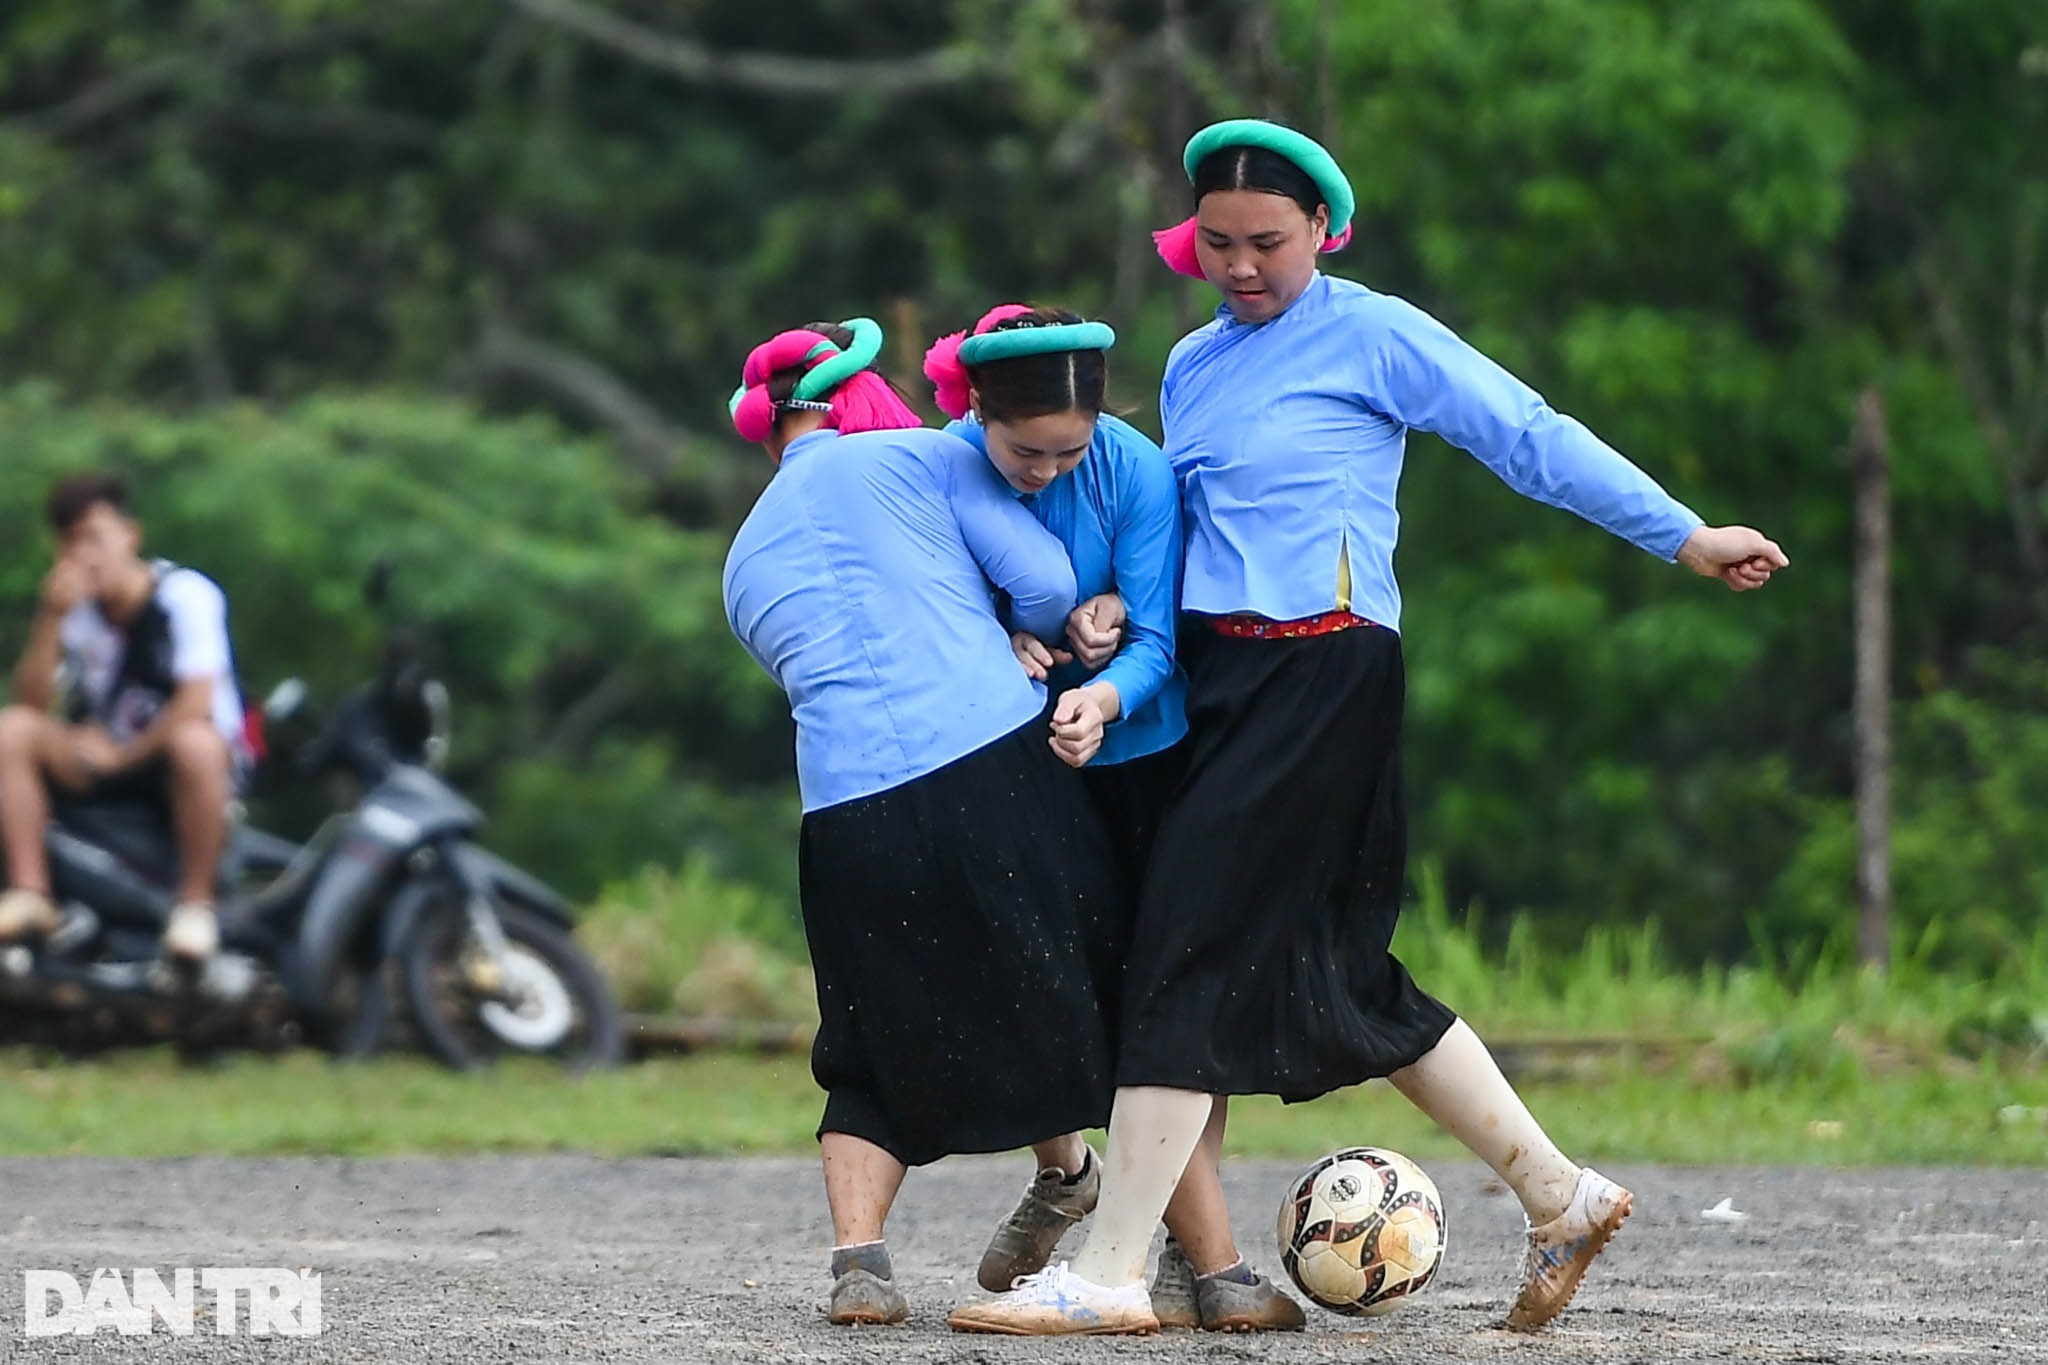 Ngắm các chị em dân tộc mặc váy xỏ giày thi đấu bóng đá trên đỉnh núi cao